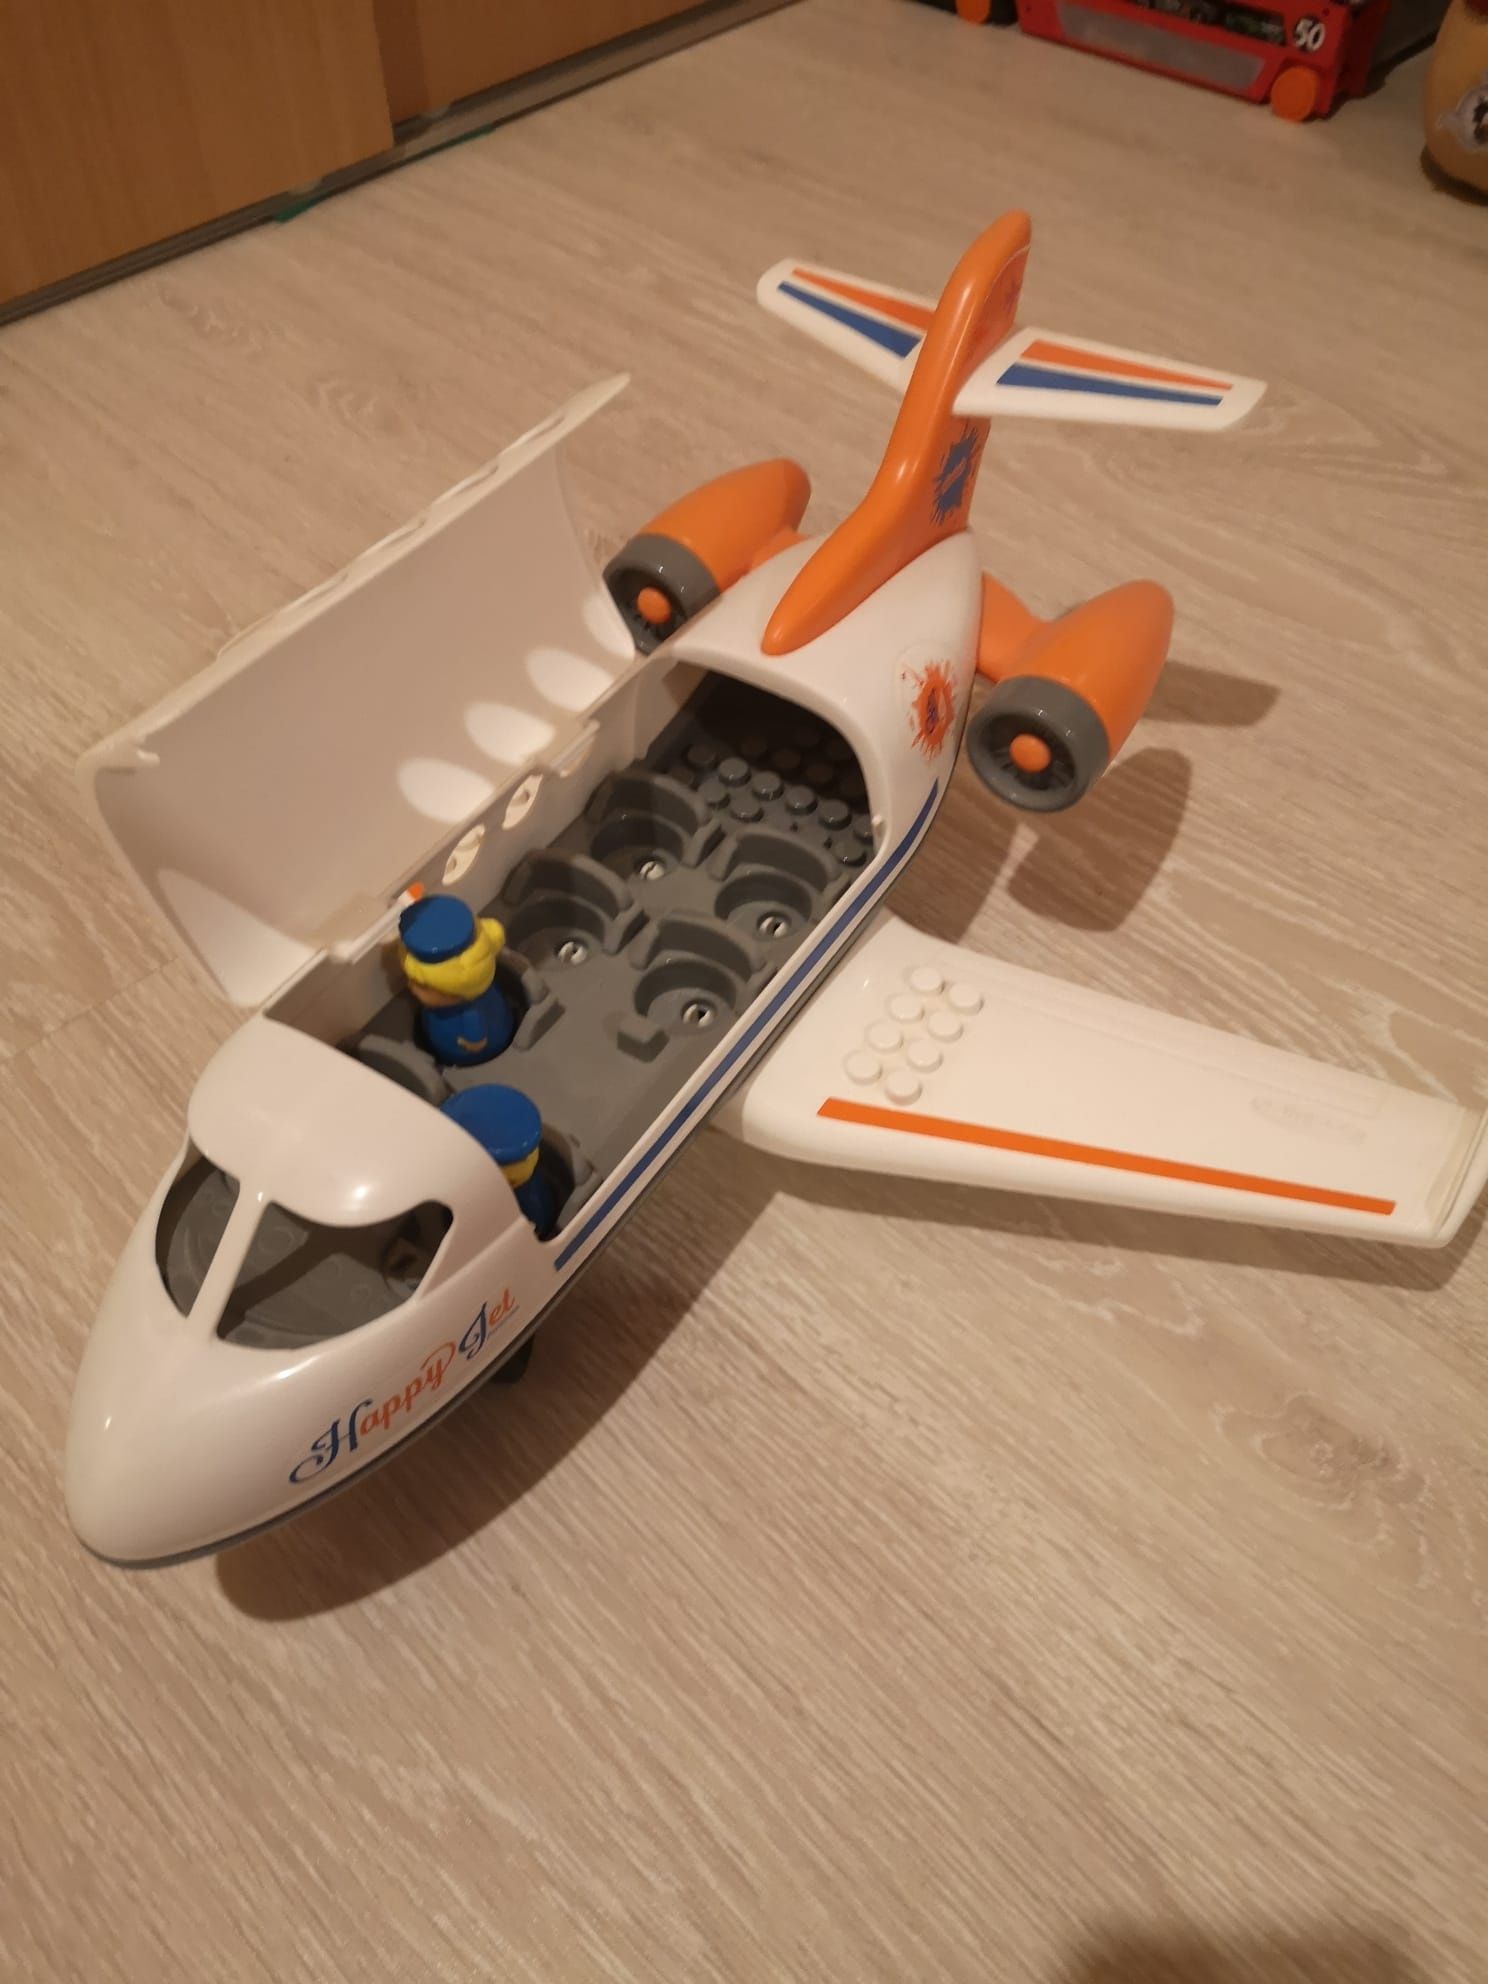 Avion de jucarie pentru copii mici.